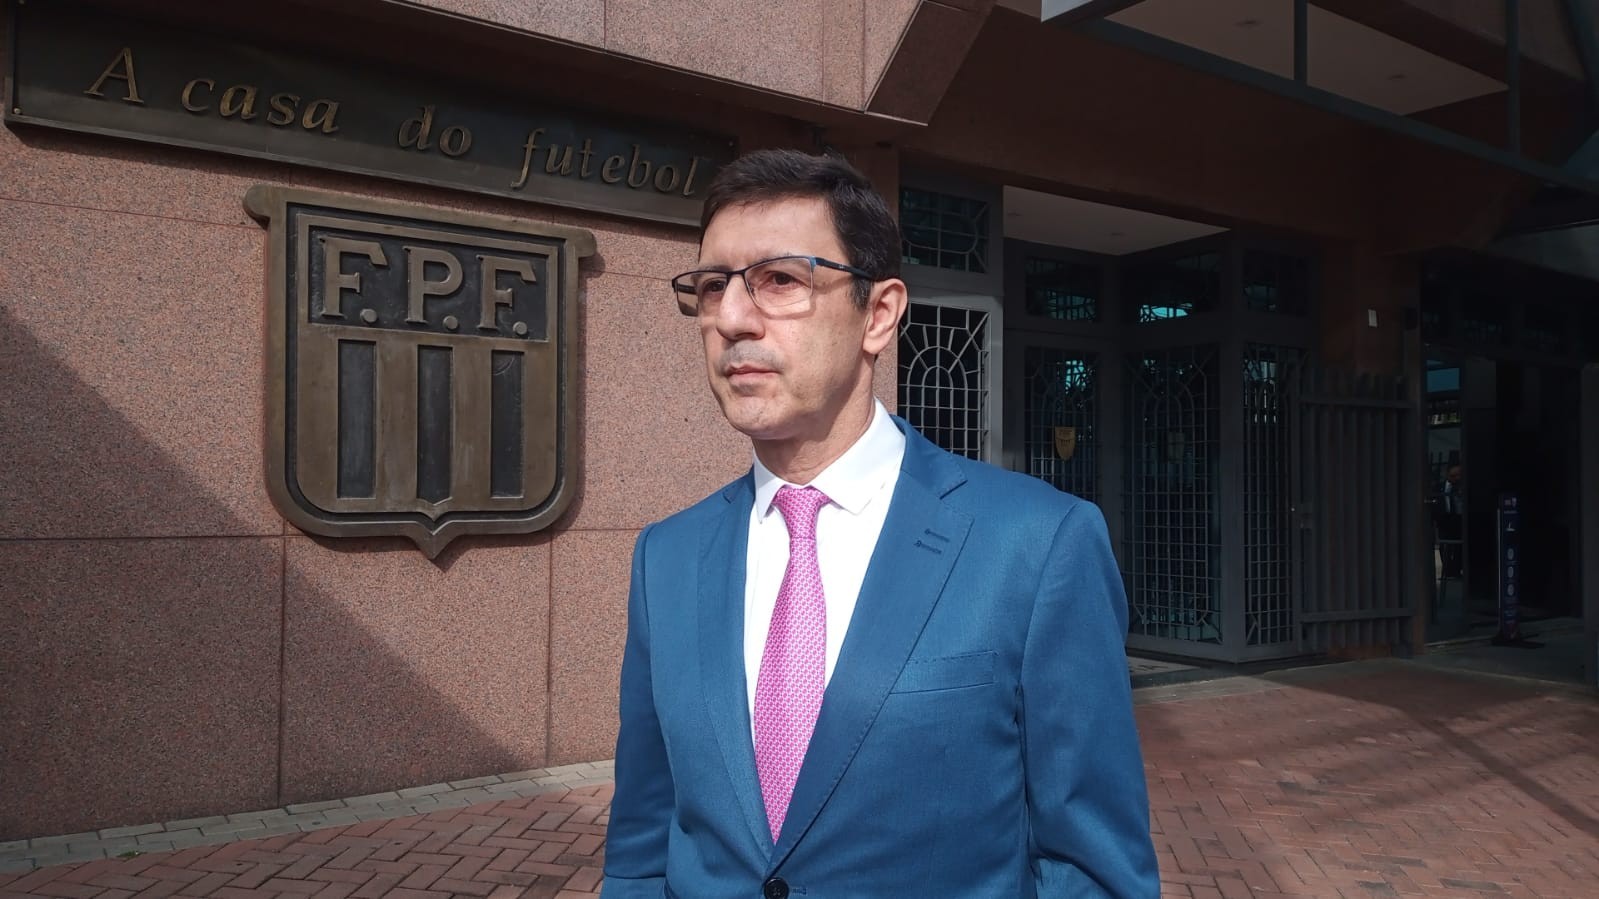 Procurador-geral do STJD nega pedido para portões fechados em Sport x Ceará; relator tem decisão final